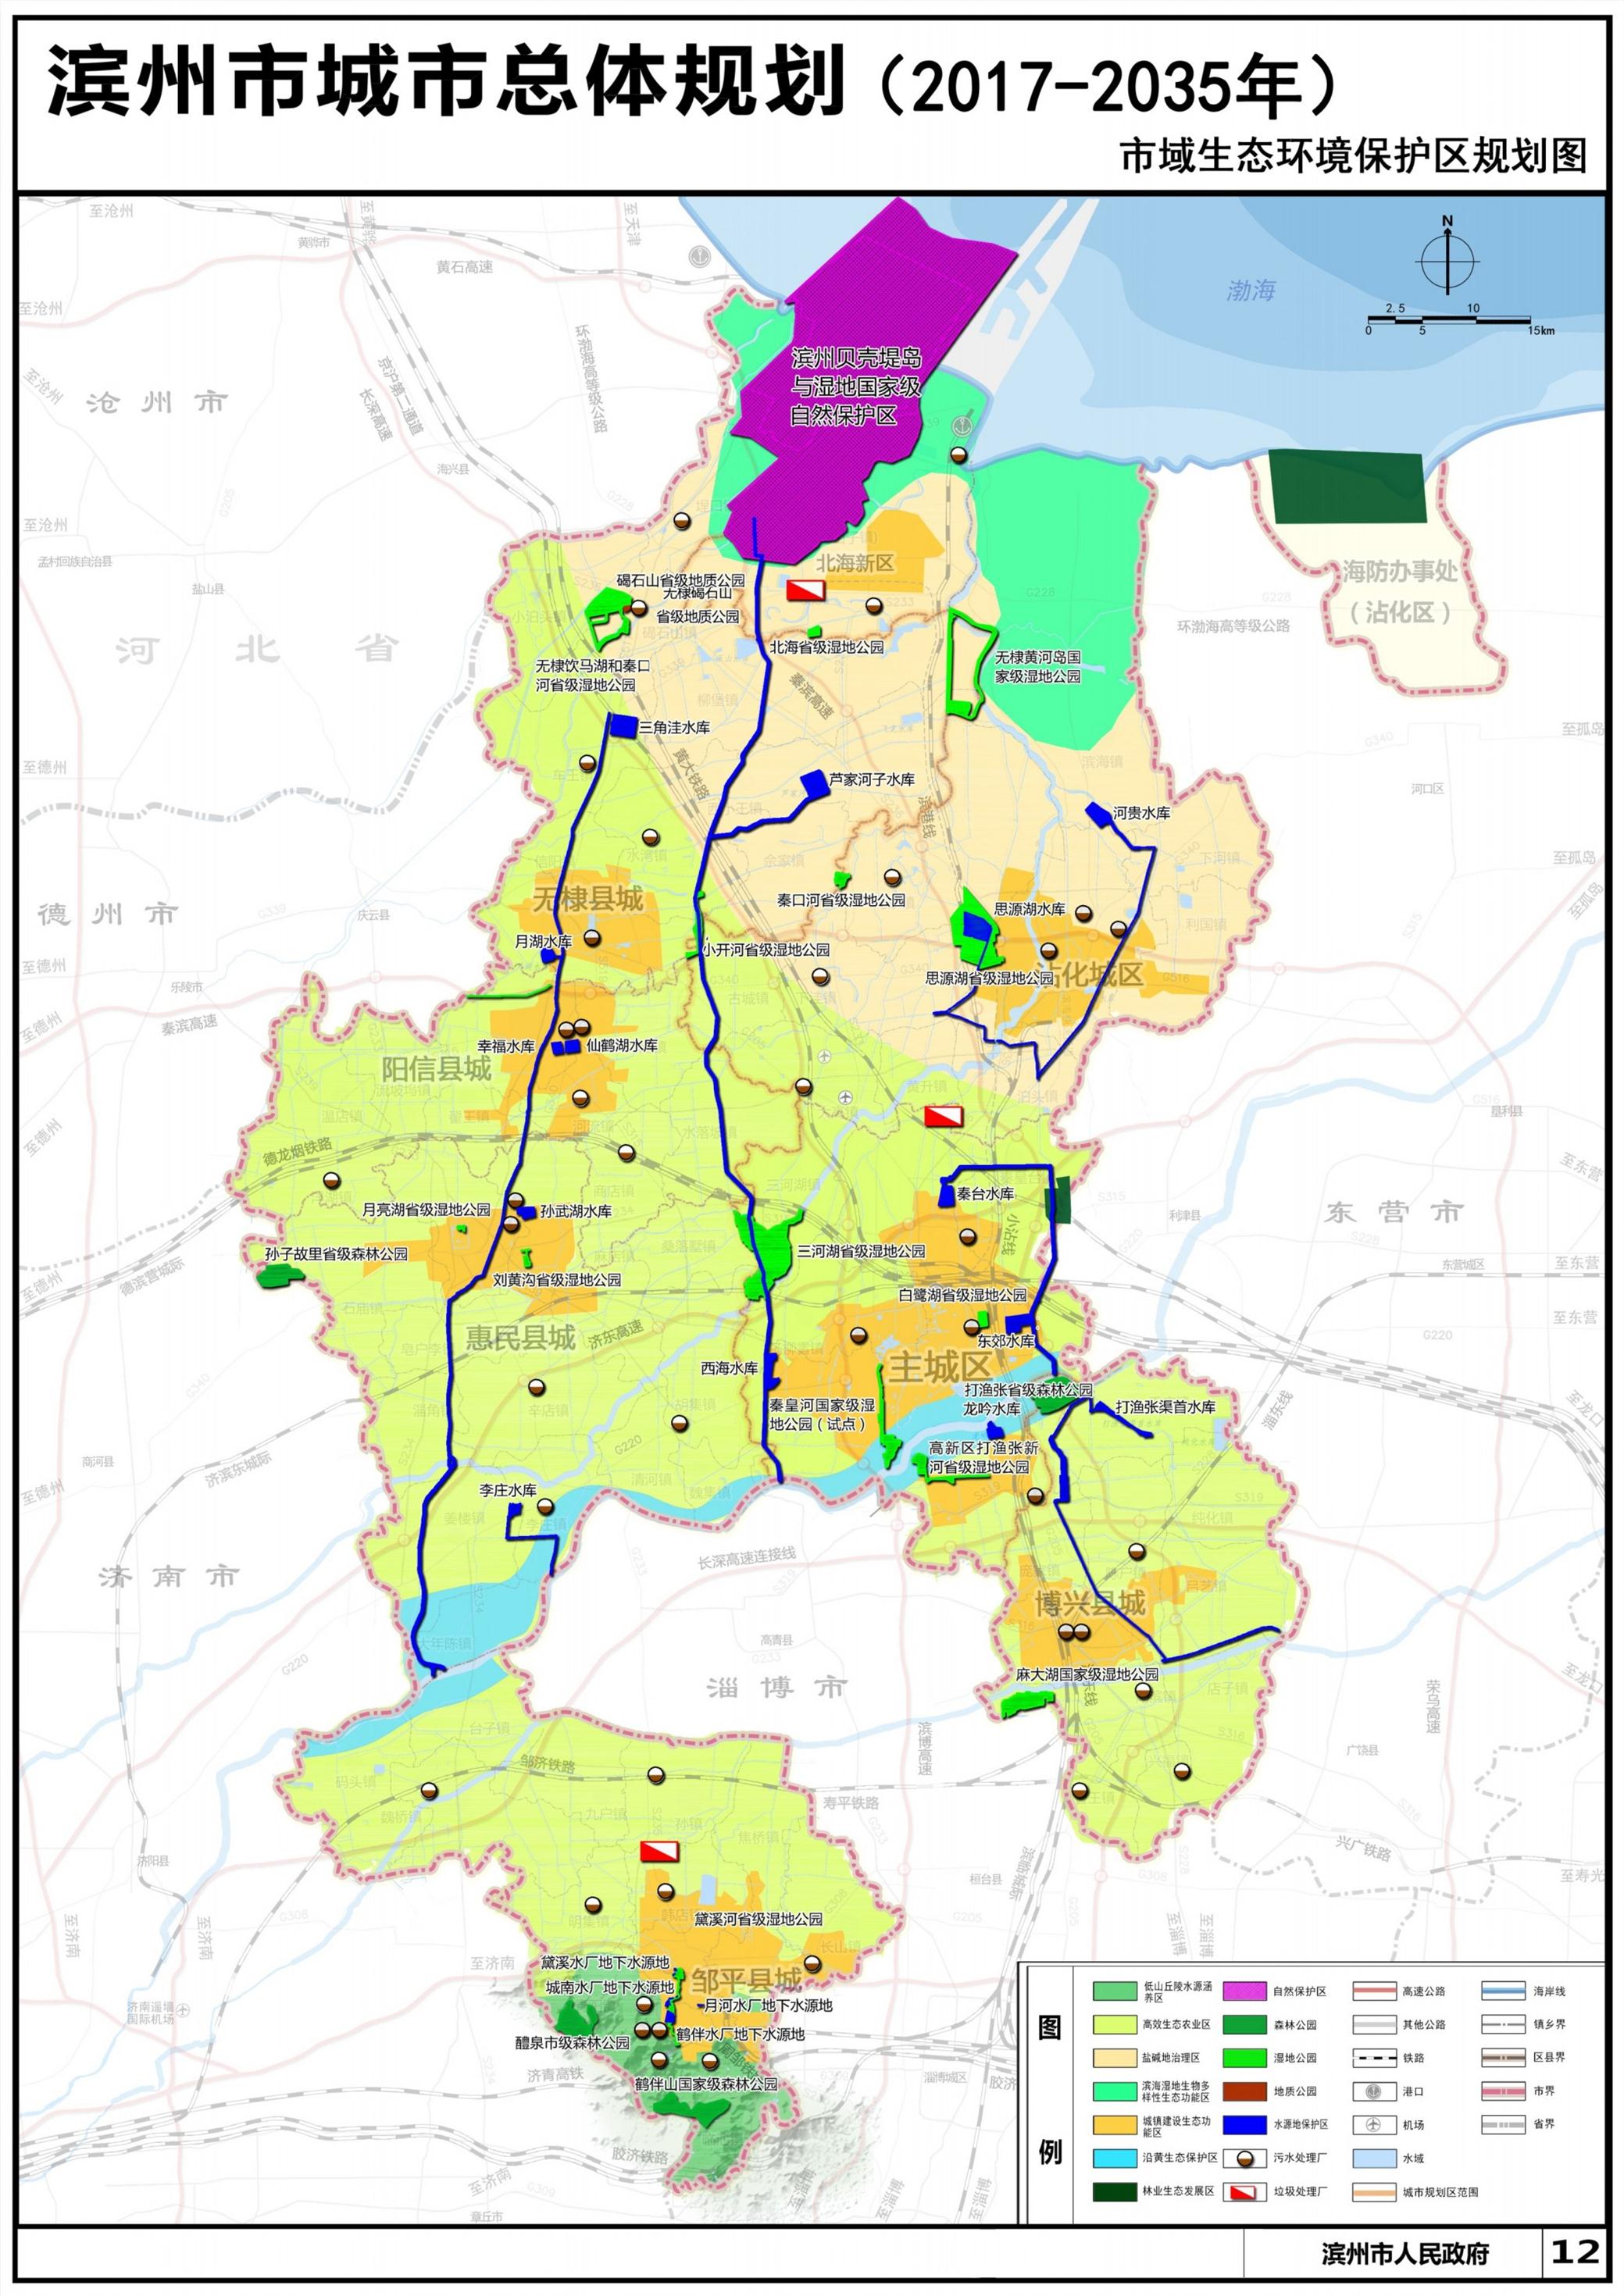 滨州市城市总体规划20172035年草案公示和意见征集